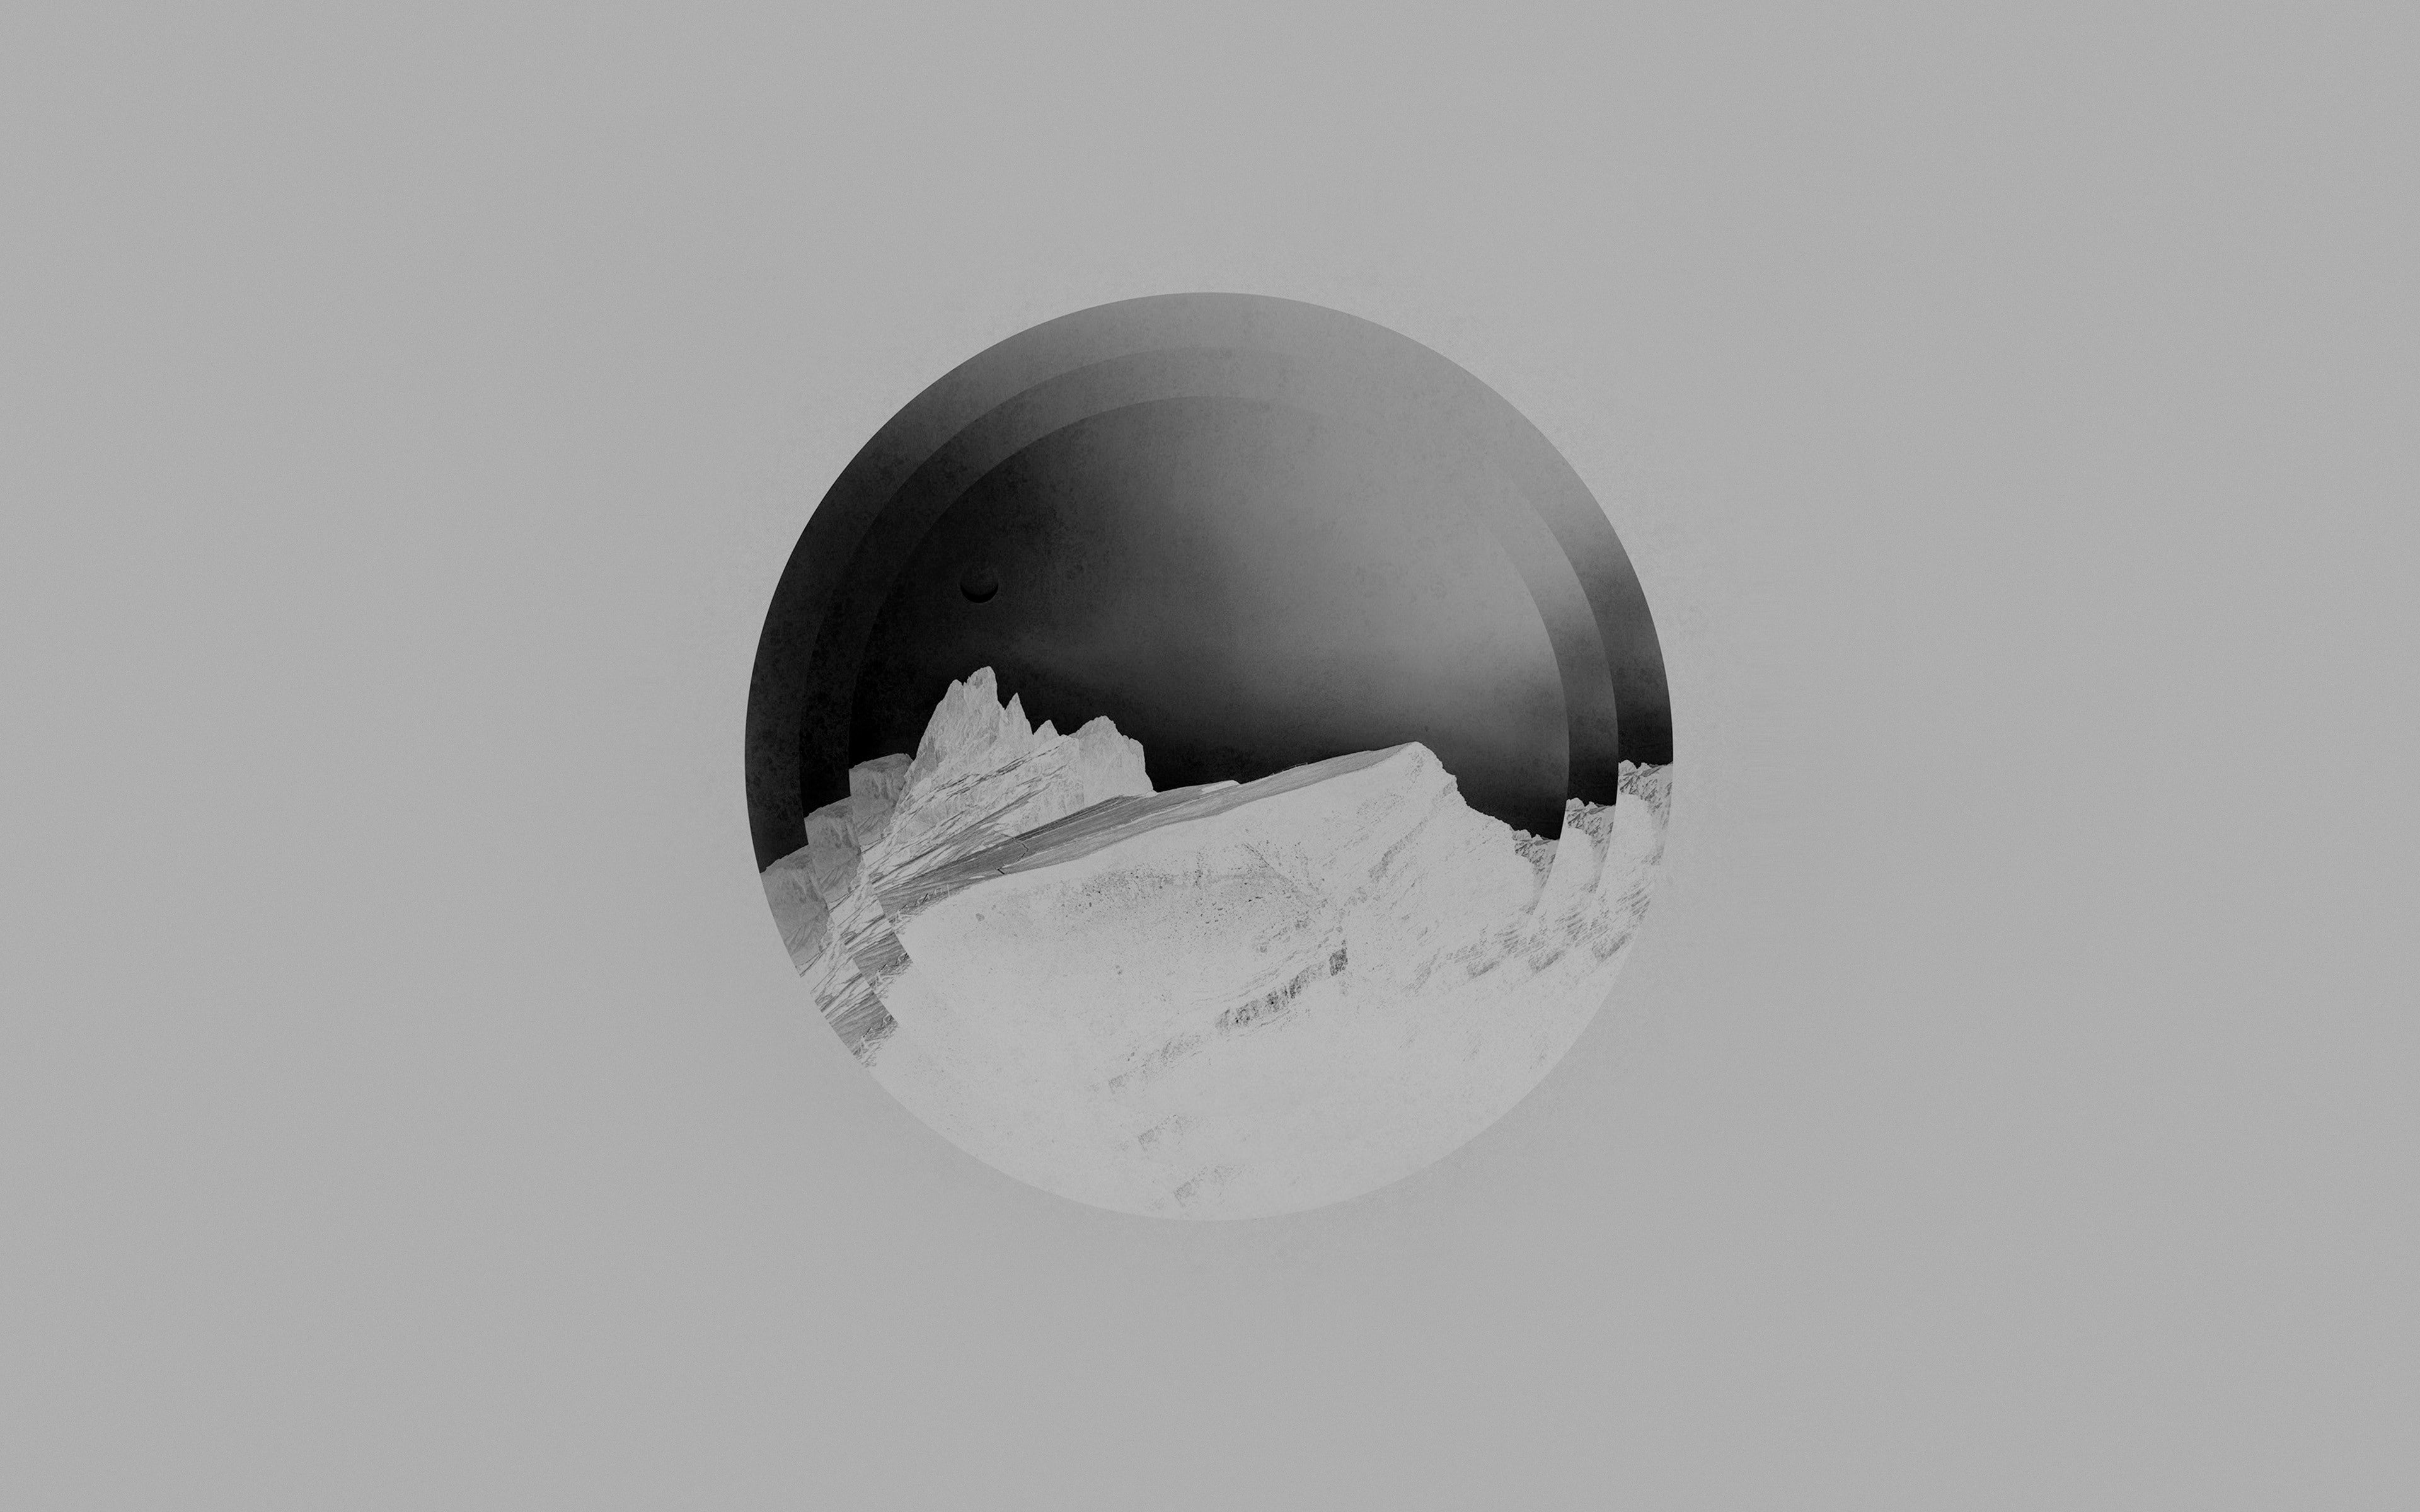 monochrome, digital art, studio shot, egg, indoors, sphere